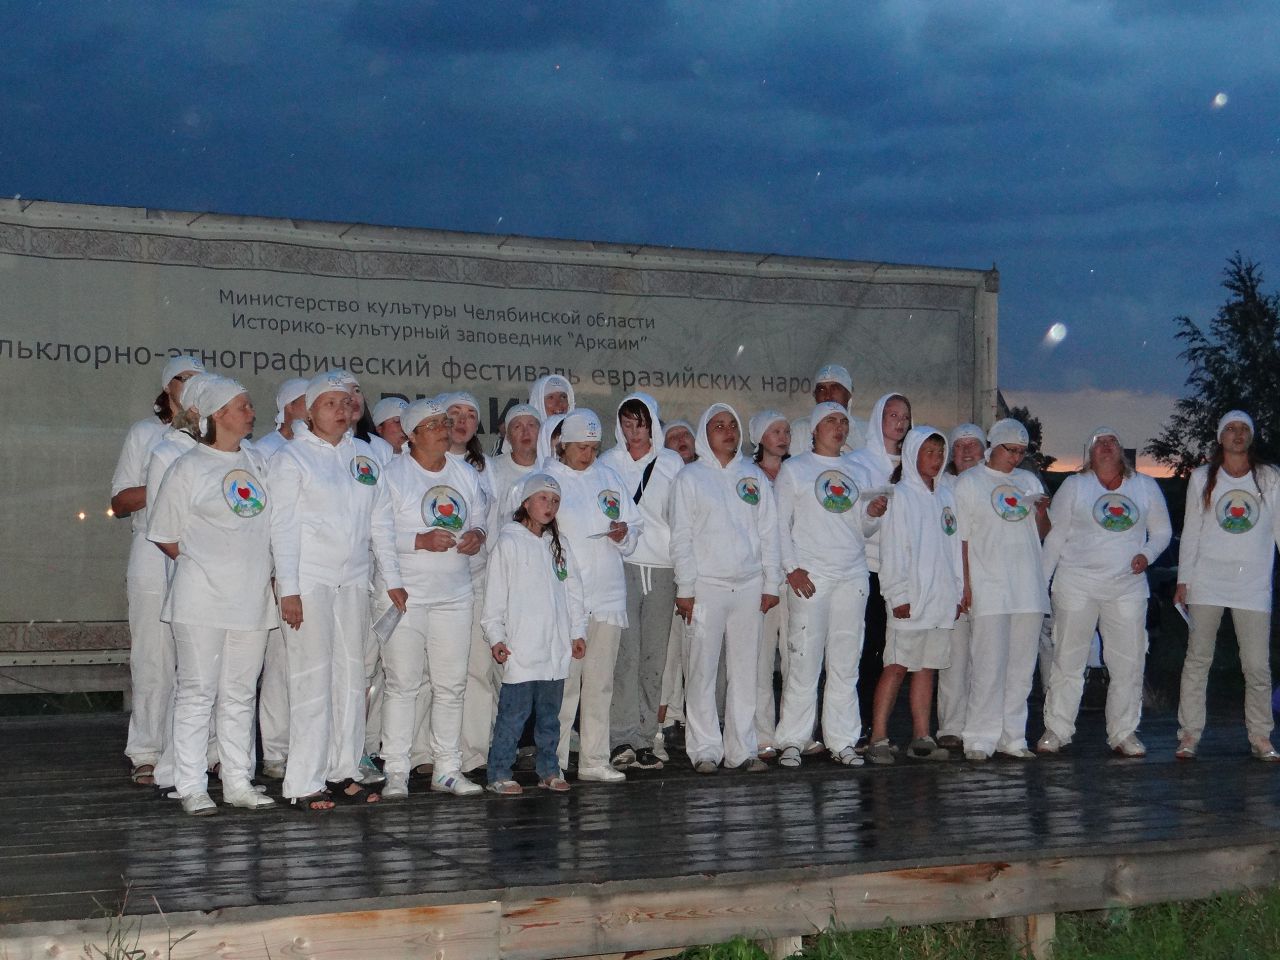 Завершающий номер традиционно за гр Арта, пошел дождь, но группа все равно выступила! - Фотоотчет: Аркаим июль 2013.